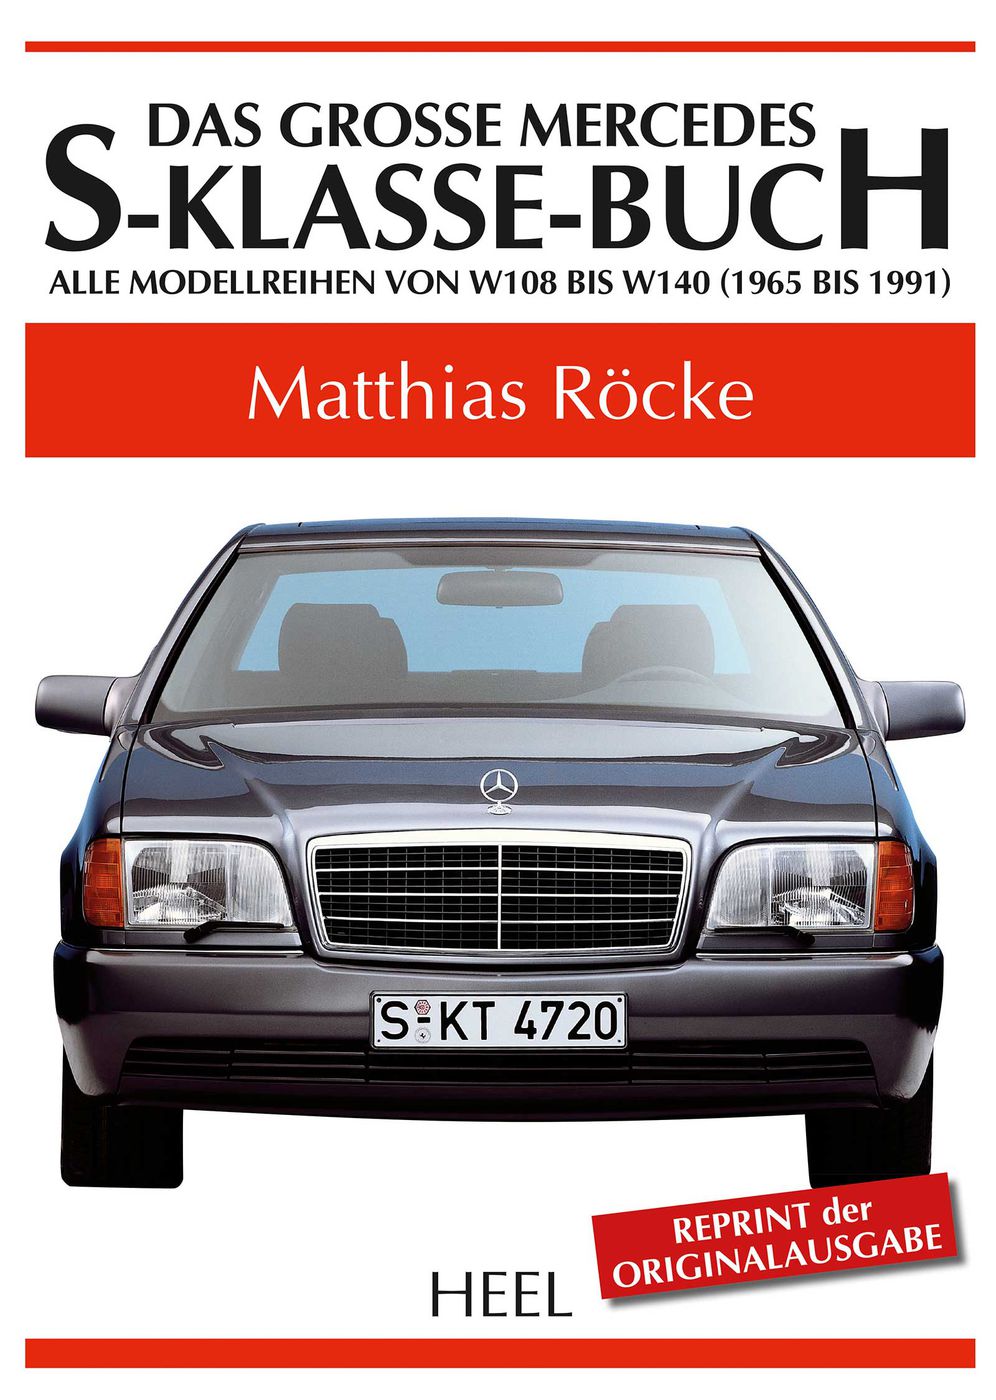 Das große Mercedes-S-Klasse-Buch
Das große Mercedes-S-Klasse-B